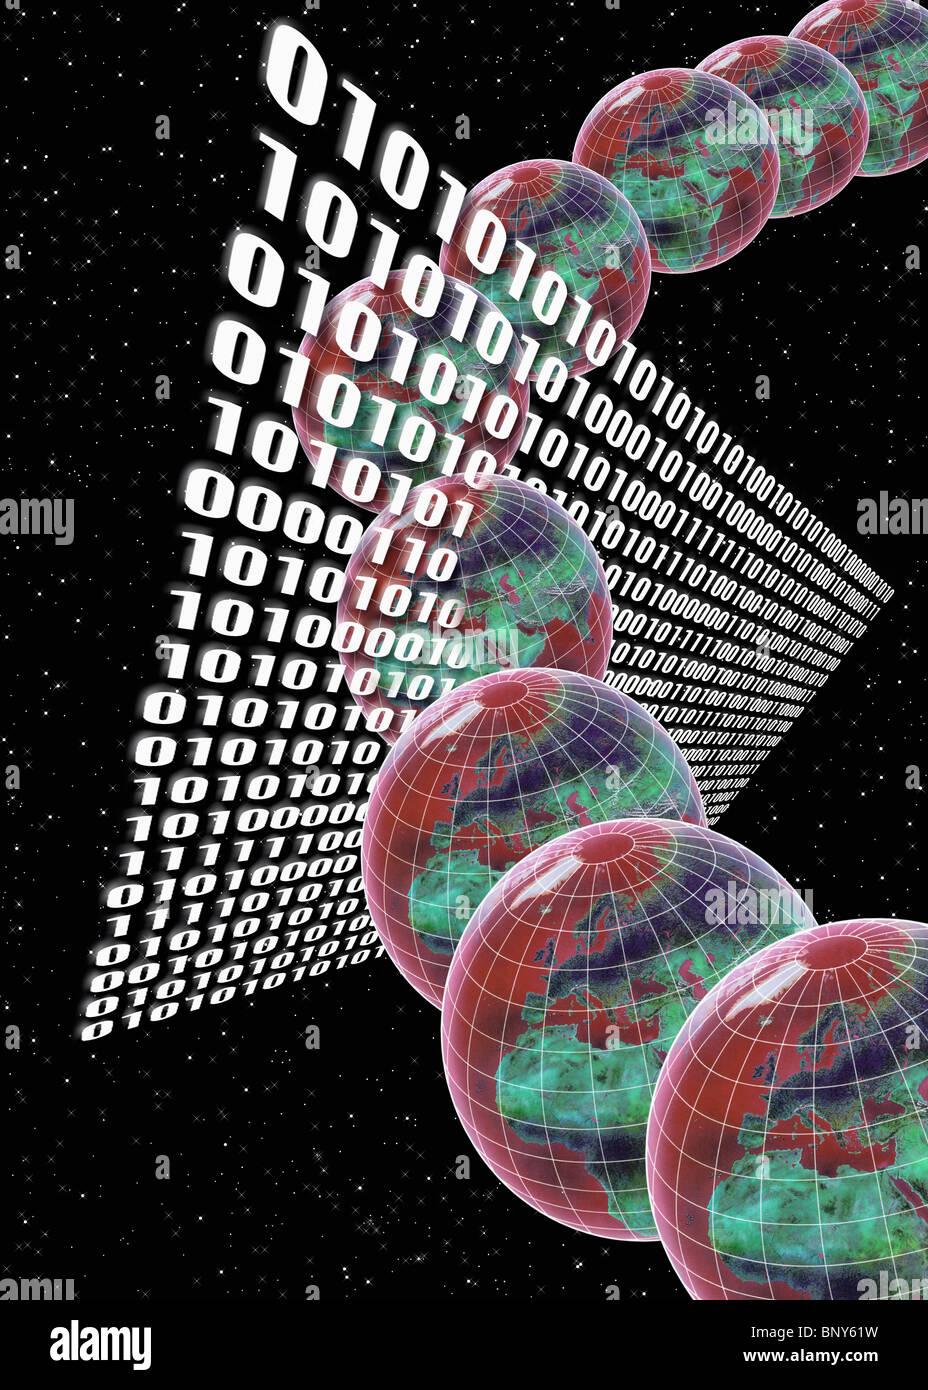 Globen Binärzahlen im Raum auf der Durchreise Stockfoto